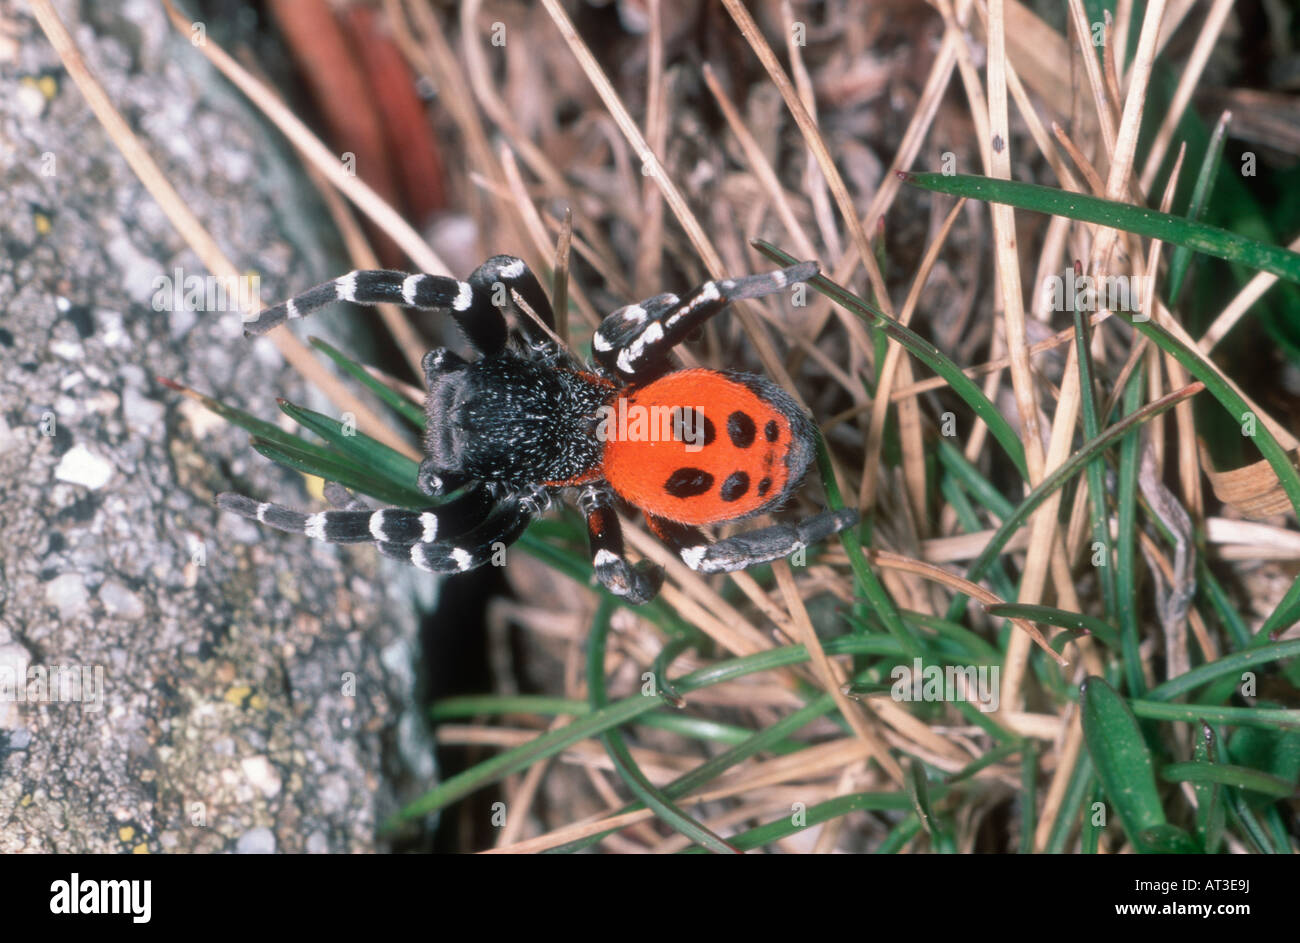 Ladybird Spider, Eresus niger. Male on ground Stock Photo